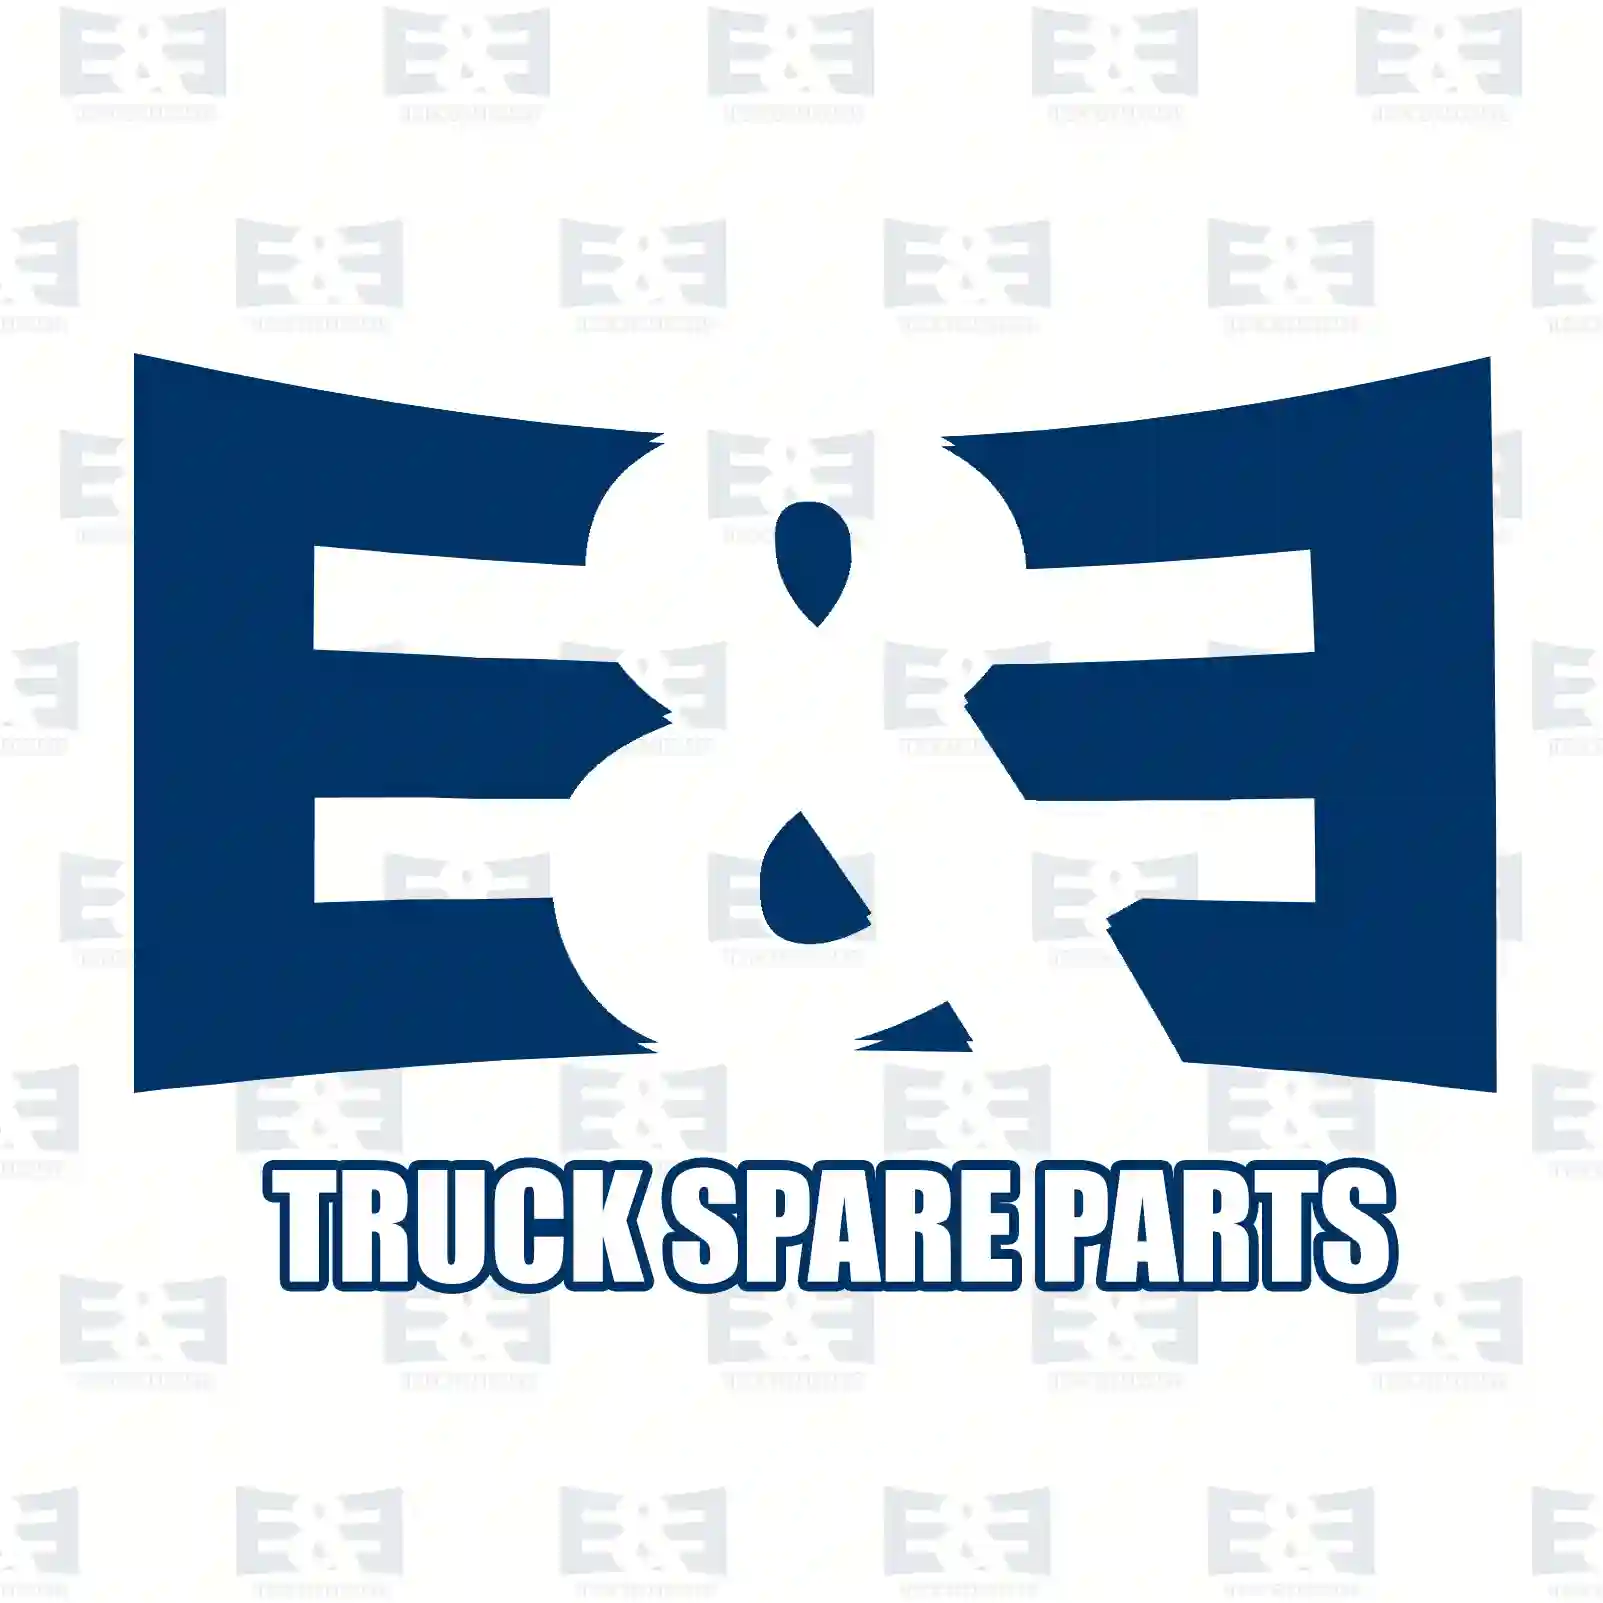 Screw, 2E2293926, 16323430, 16323434, 17456534, 503642207 ||  2E2293926 E&E Truck Spare Parts | Truck Spare Parts, Auotomotive Spare Parts Screw, 2E2293926, 16323430, 16323434, 17456534, 503642207 ||  2E2293926 E&E Truck Spare Parts | Truck Spare Parts, Auotomotive Spare Parts